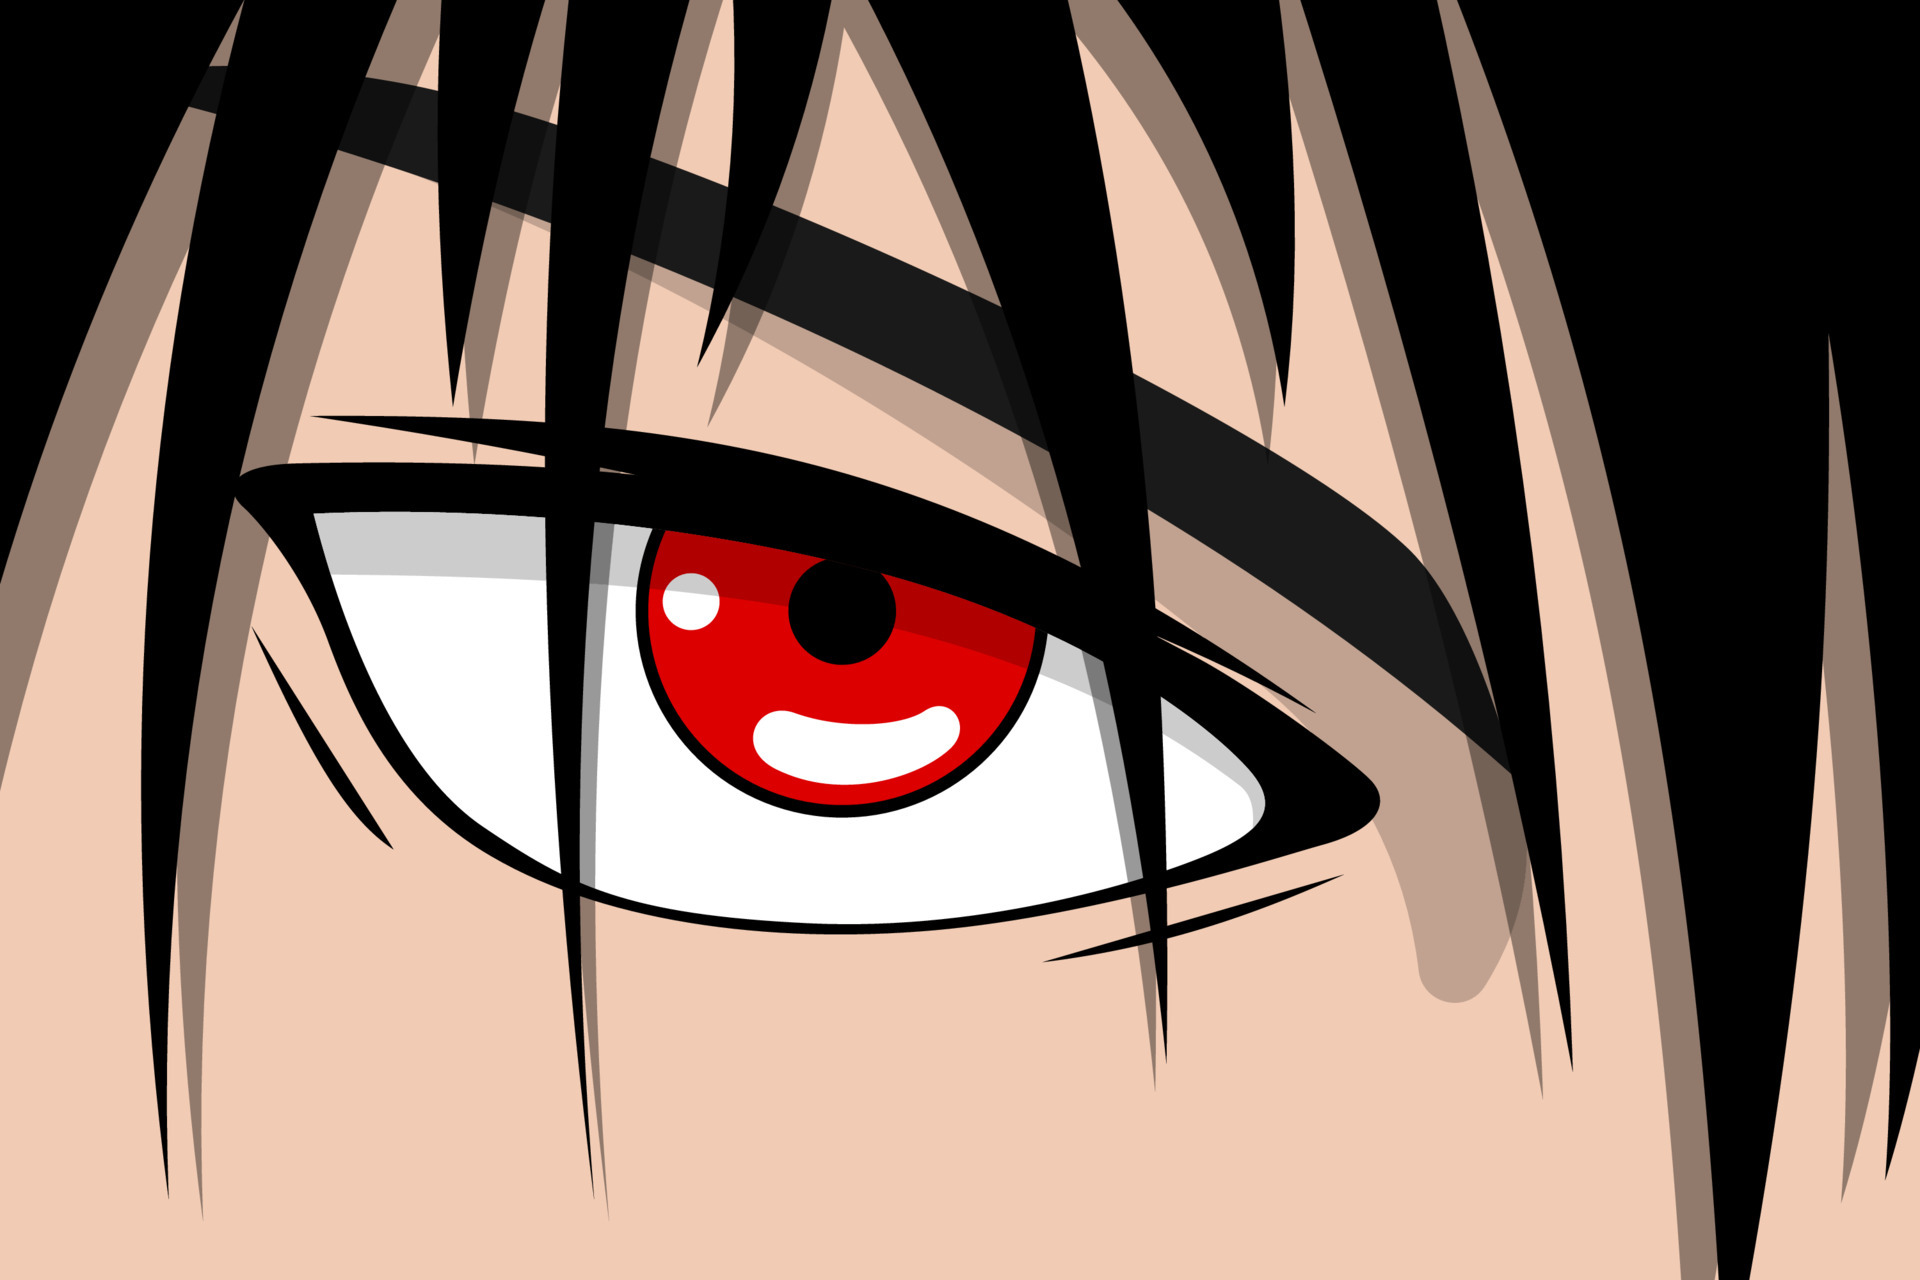 anime rosto de menino bonito com olhos vermelhos e cabelo preto. conceito  de fundo de arte de herói de mangá. desenho vetorial olhar ilustração eps  7165799 Vetor no Vecteezy